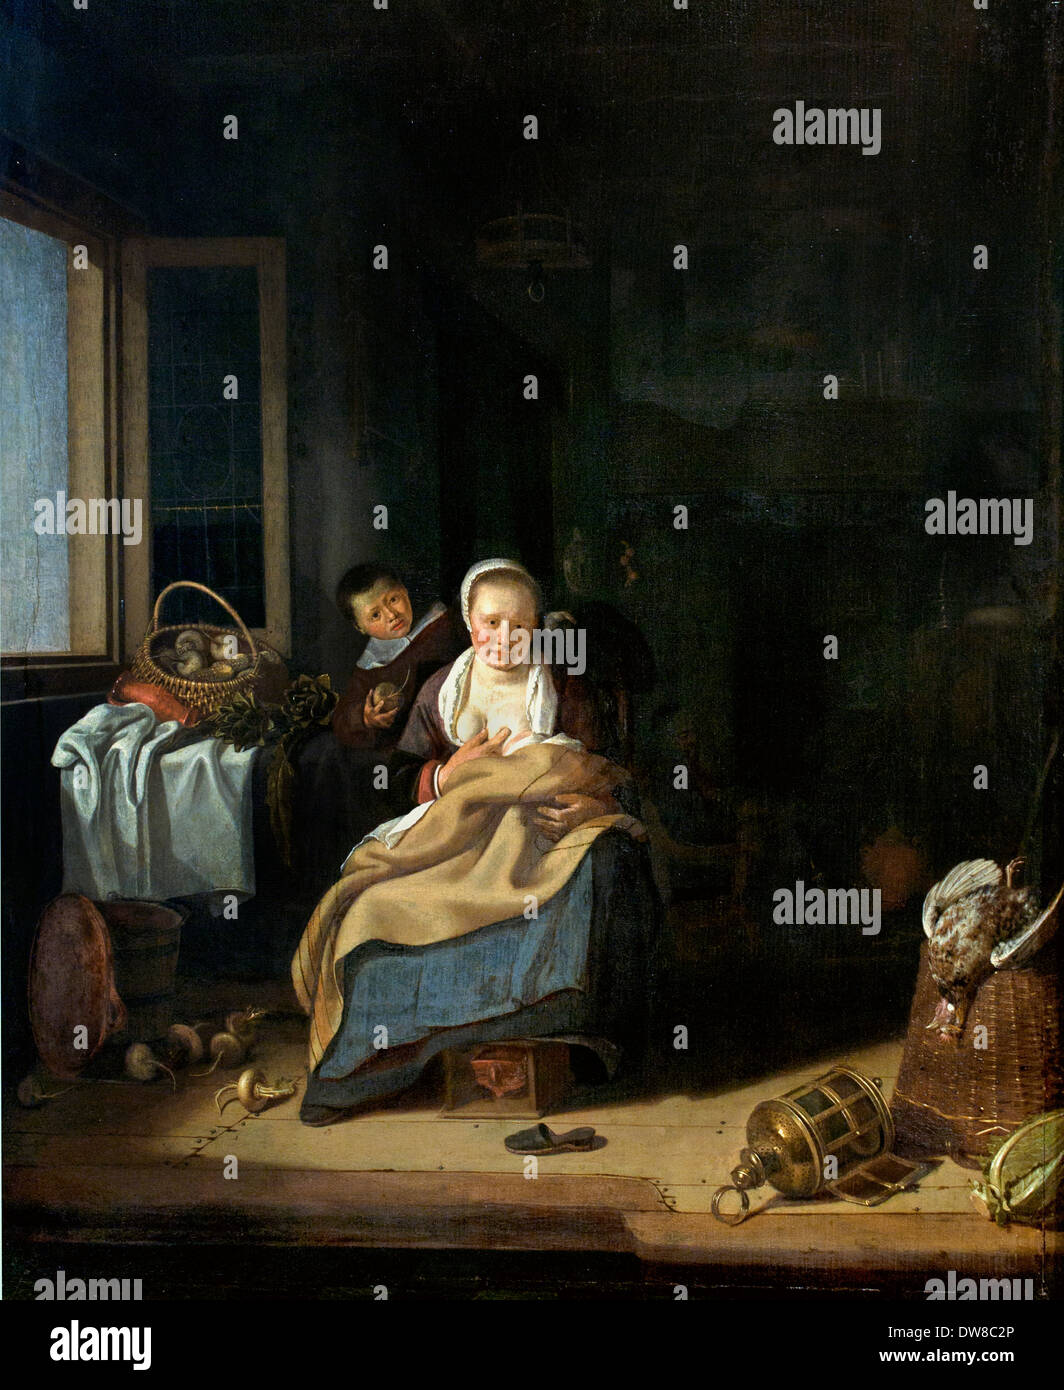 Mère allaitante Pieter Cornelisz. van Slingeland 1640 - 1691 Pays-Bas Néerlandais Banque D'Images